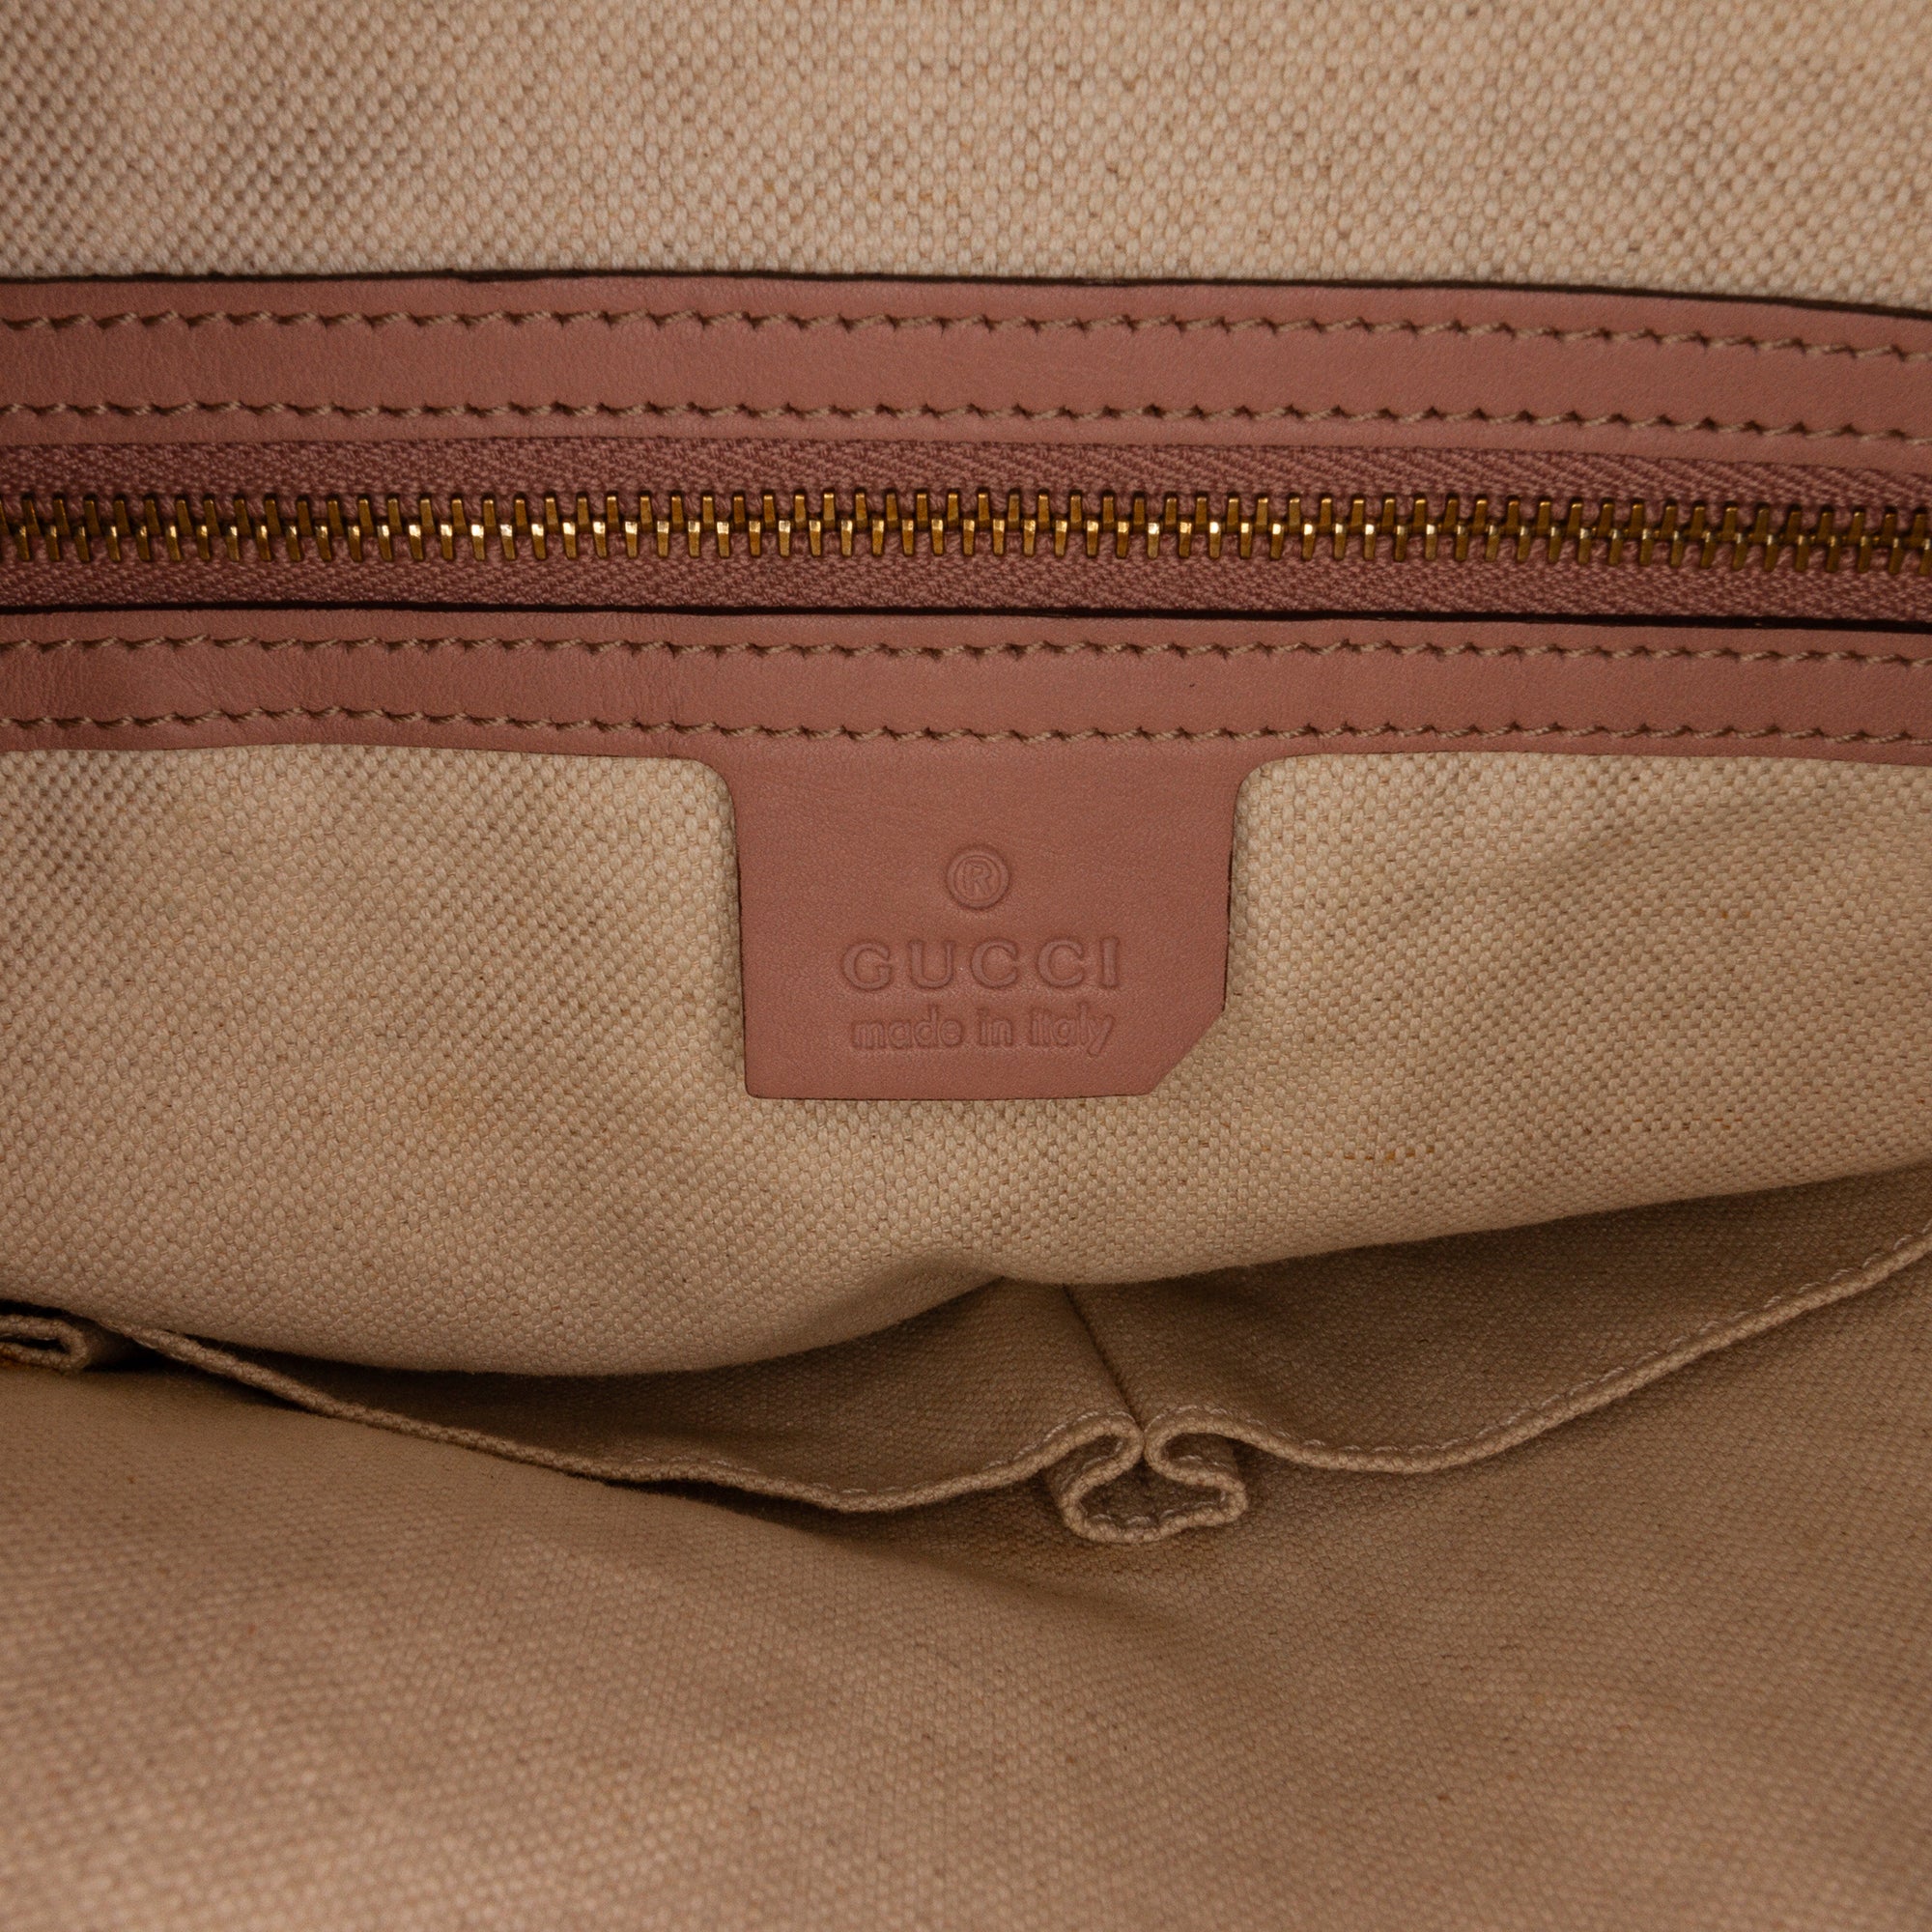 Pink Gucci Medium Guccissima Bree Shoulder Bag – Designer Revival